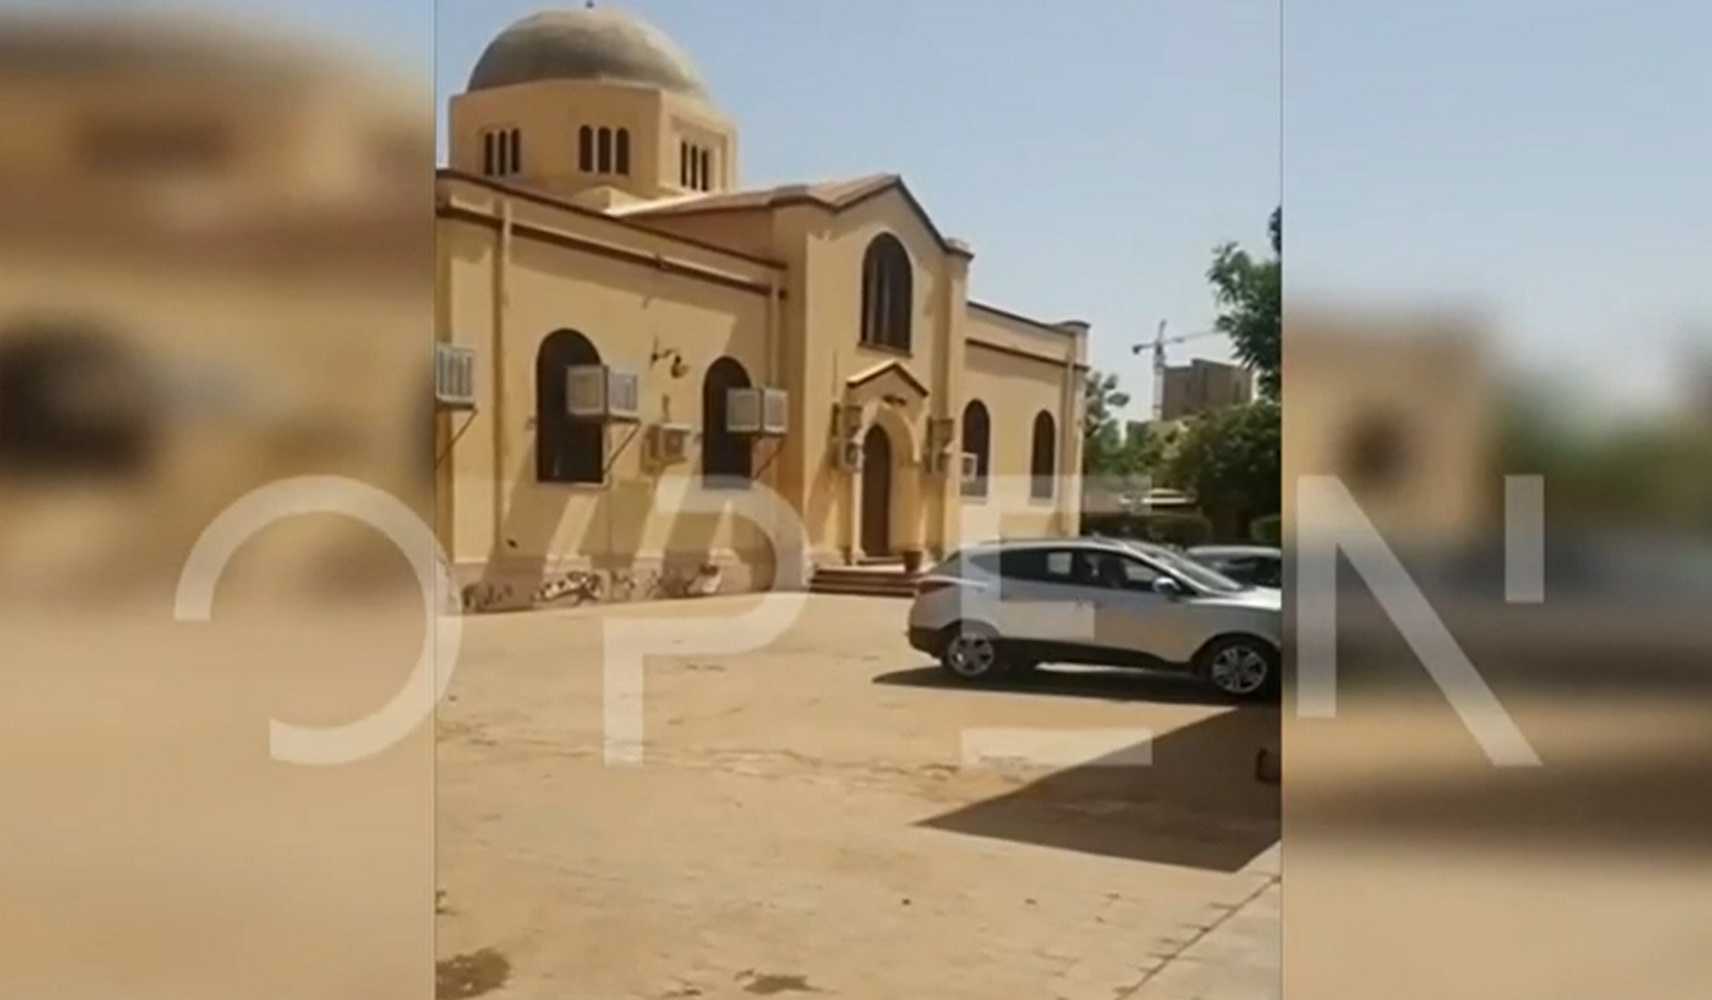 Σουδάν: Το βίντεο που τράβηξαν οι Έλληνες λίγο πριν τραυματιστούν από τη ρουκέτα